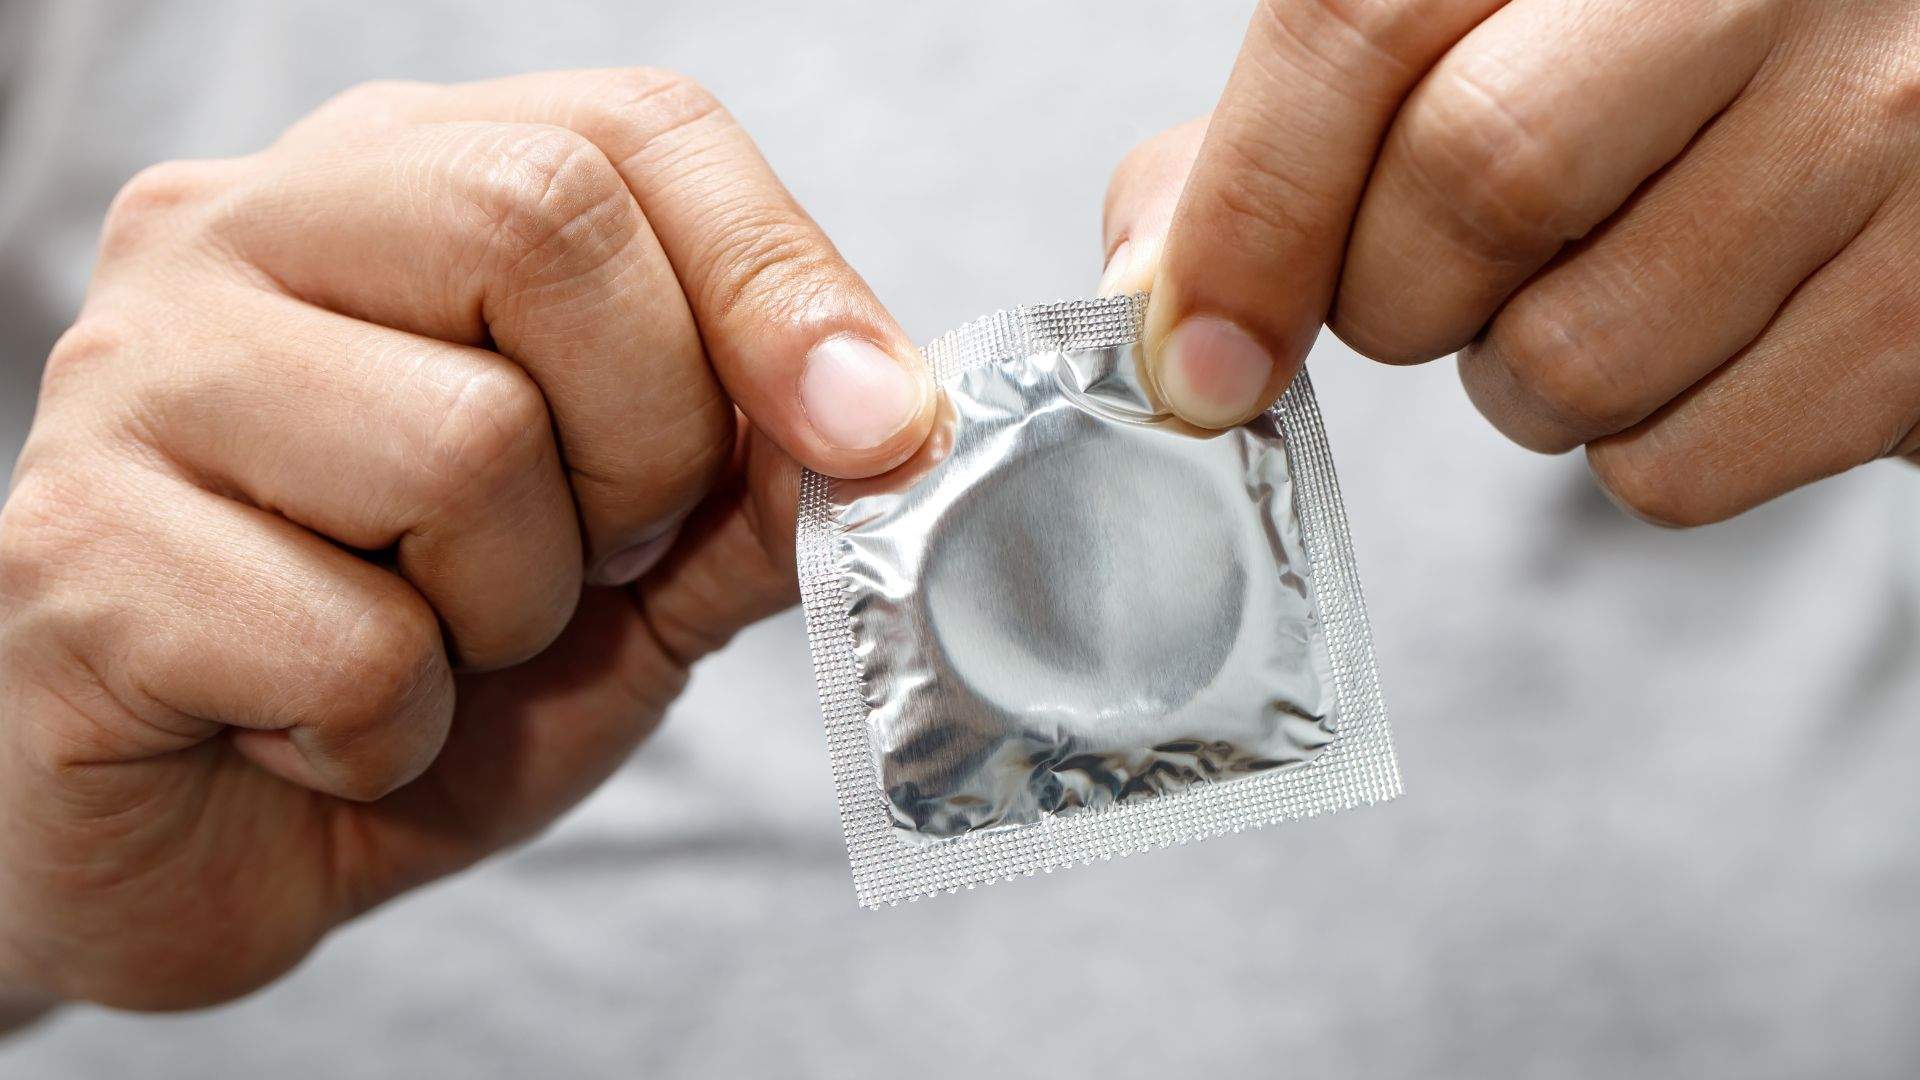 El Supremo considera delito quitarse el condón sin permiso en medio de una relación sexual